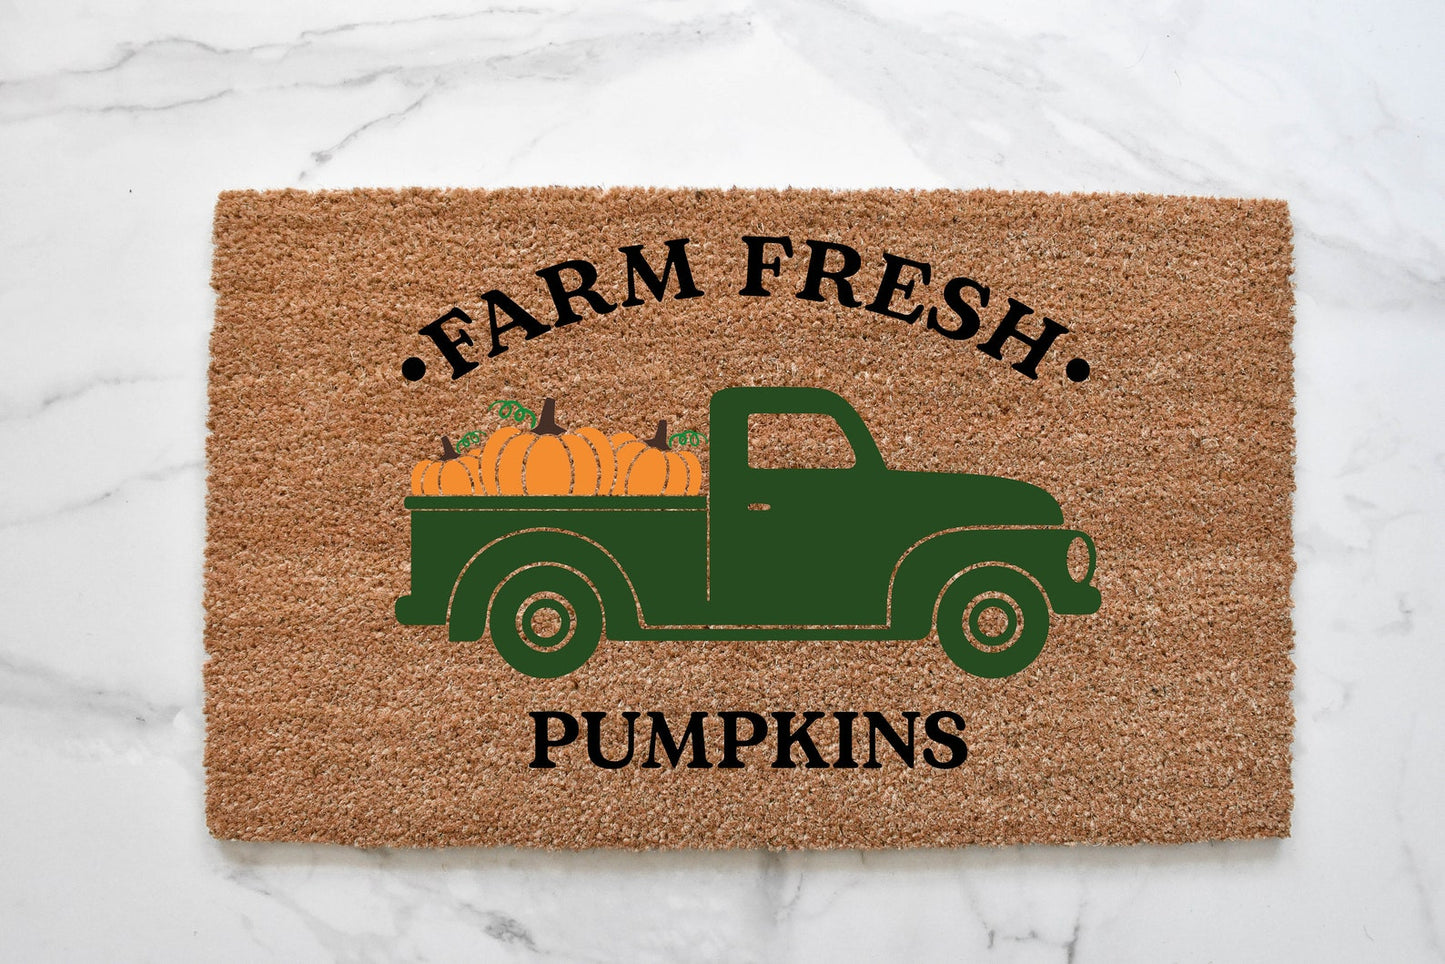 Farm Fresh Pumpkins Truck Doormat